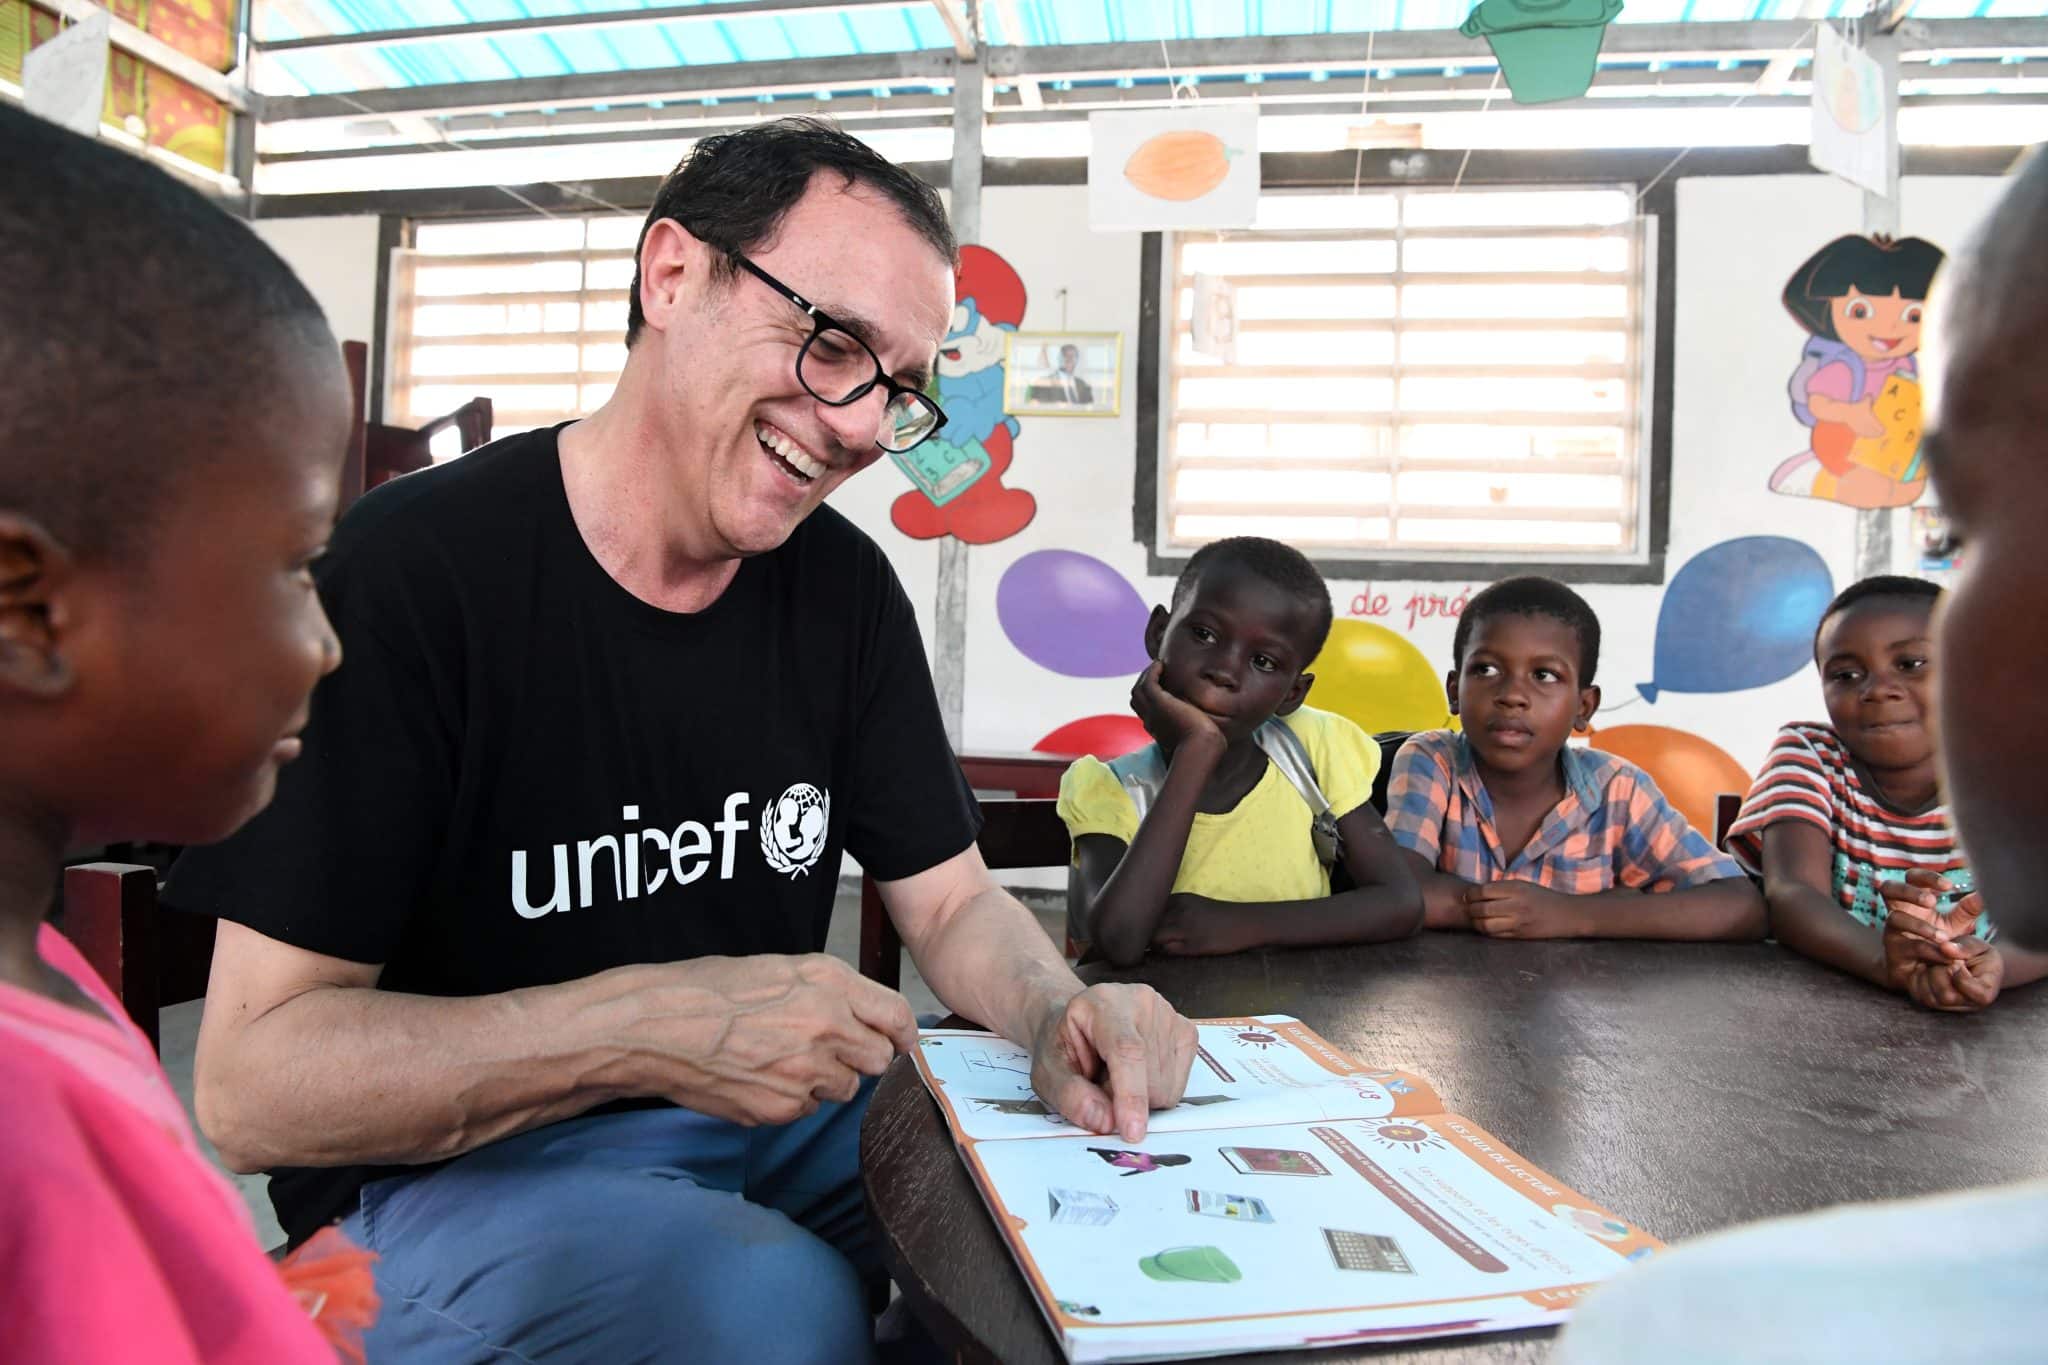 Thierry Beccaro, ambassadeur de l'UNICEF visite une école à Gonzagueville, une banlieue d'Abidjan, la capitale de la Côte d'Ivoire.© UNICEF/UN0285088/Dejongh